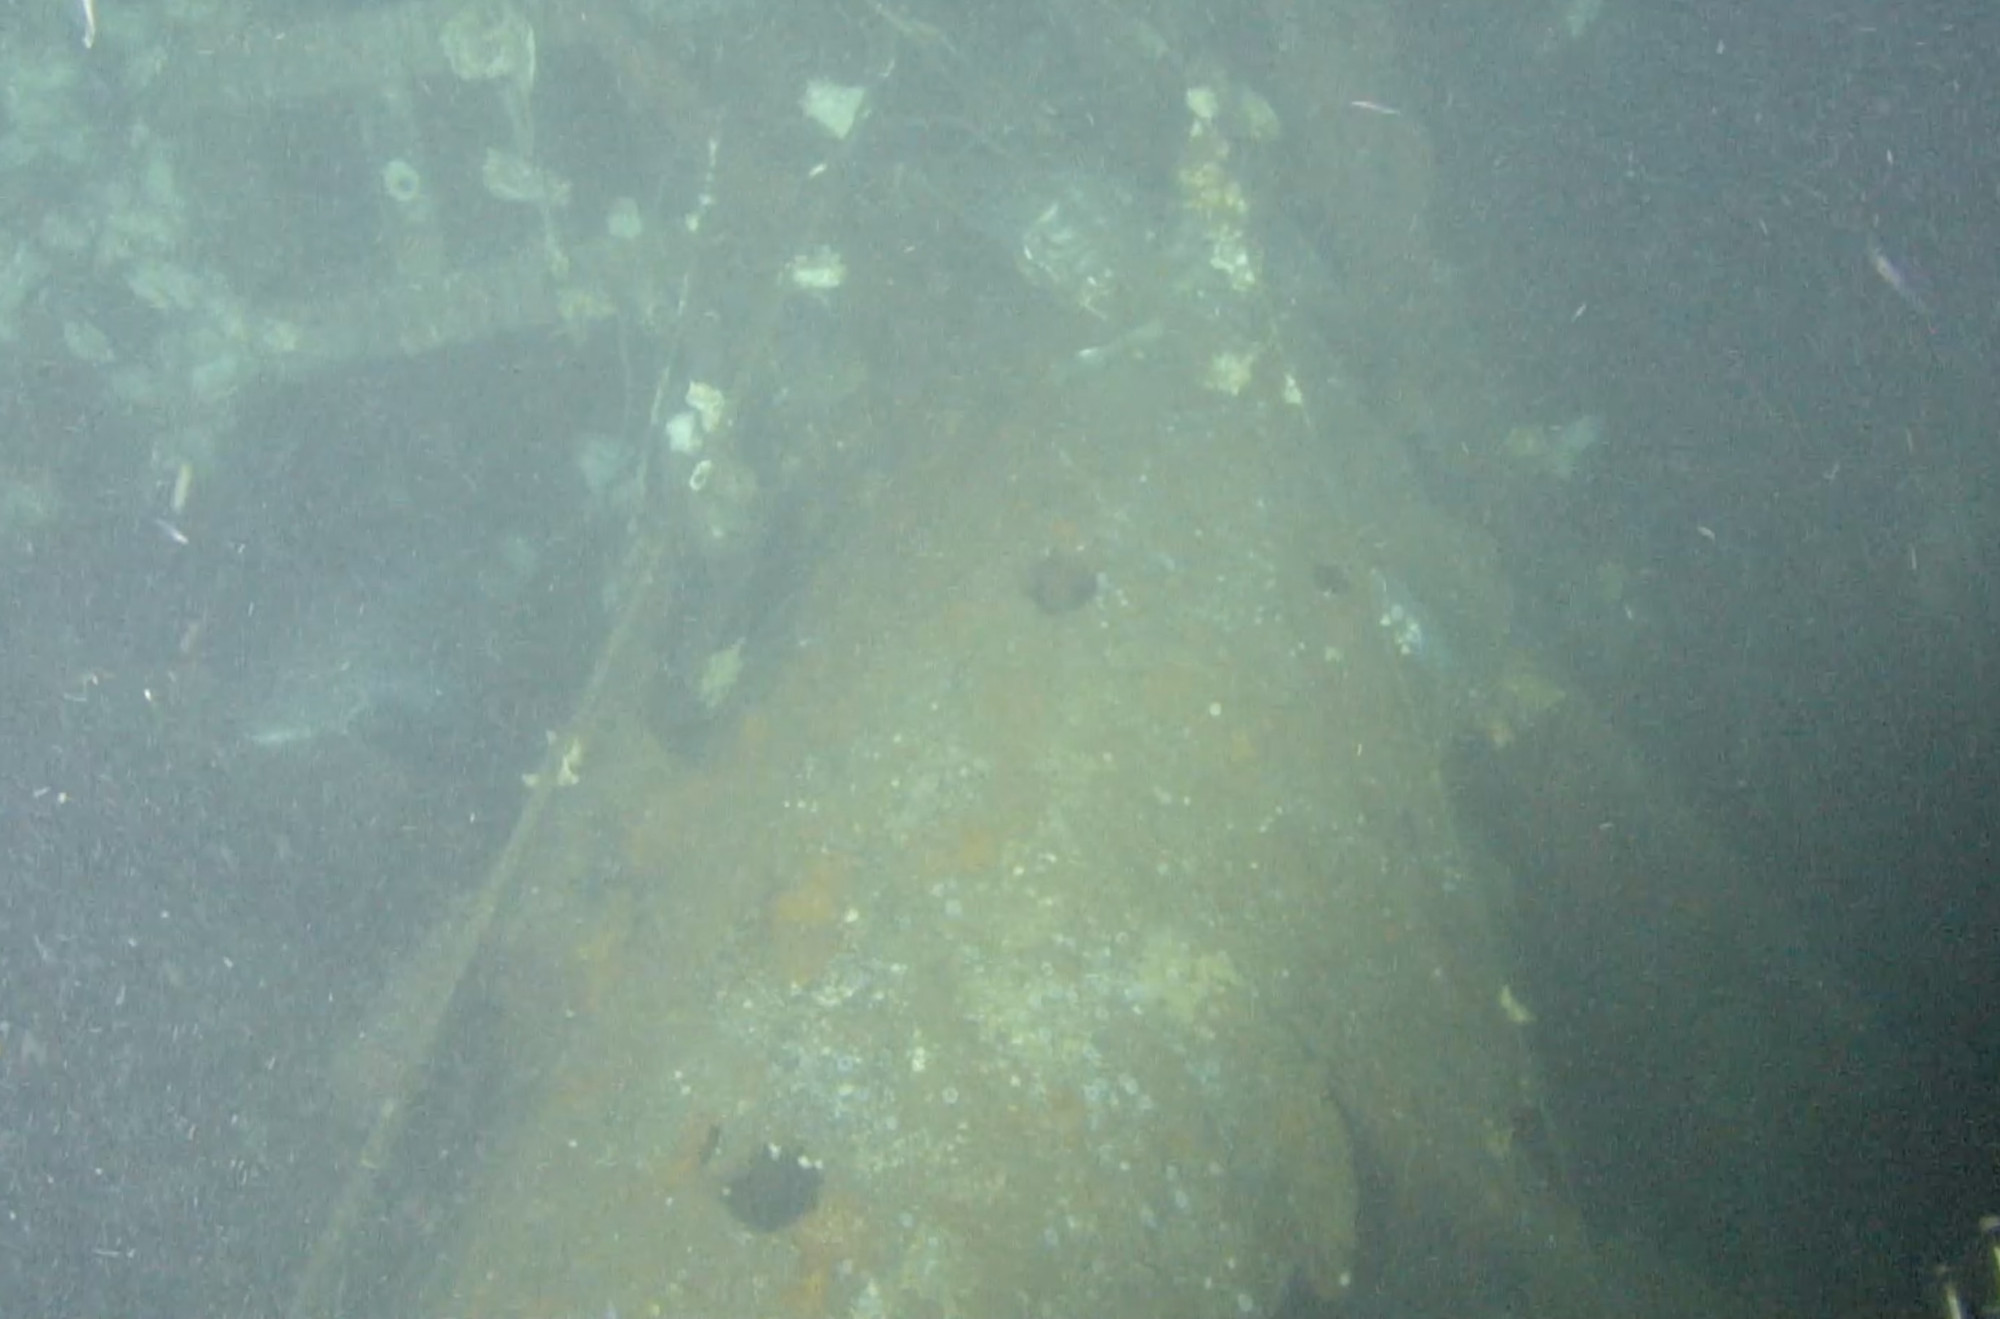 Megtalálták a II. világháború legendás amerikai tengeralattjárónak, az Albacore-nak a roncsait